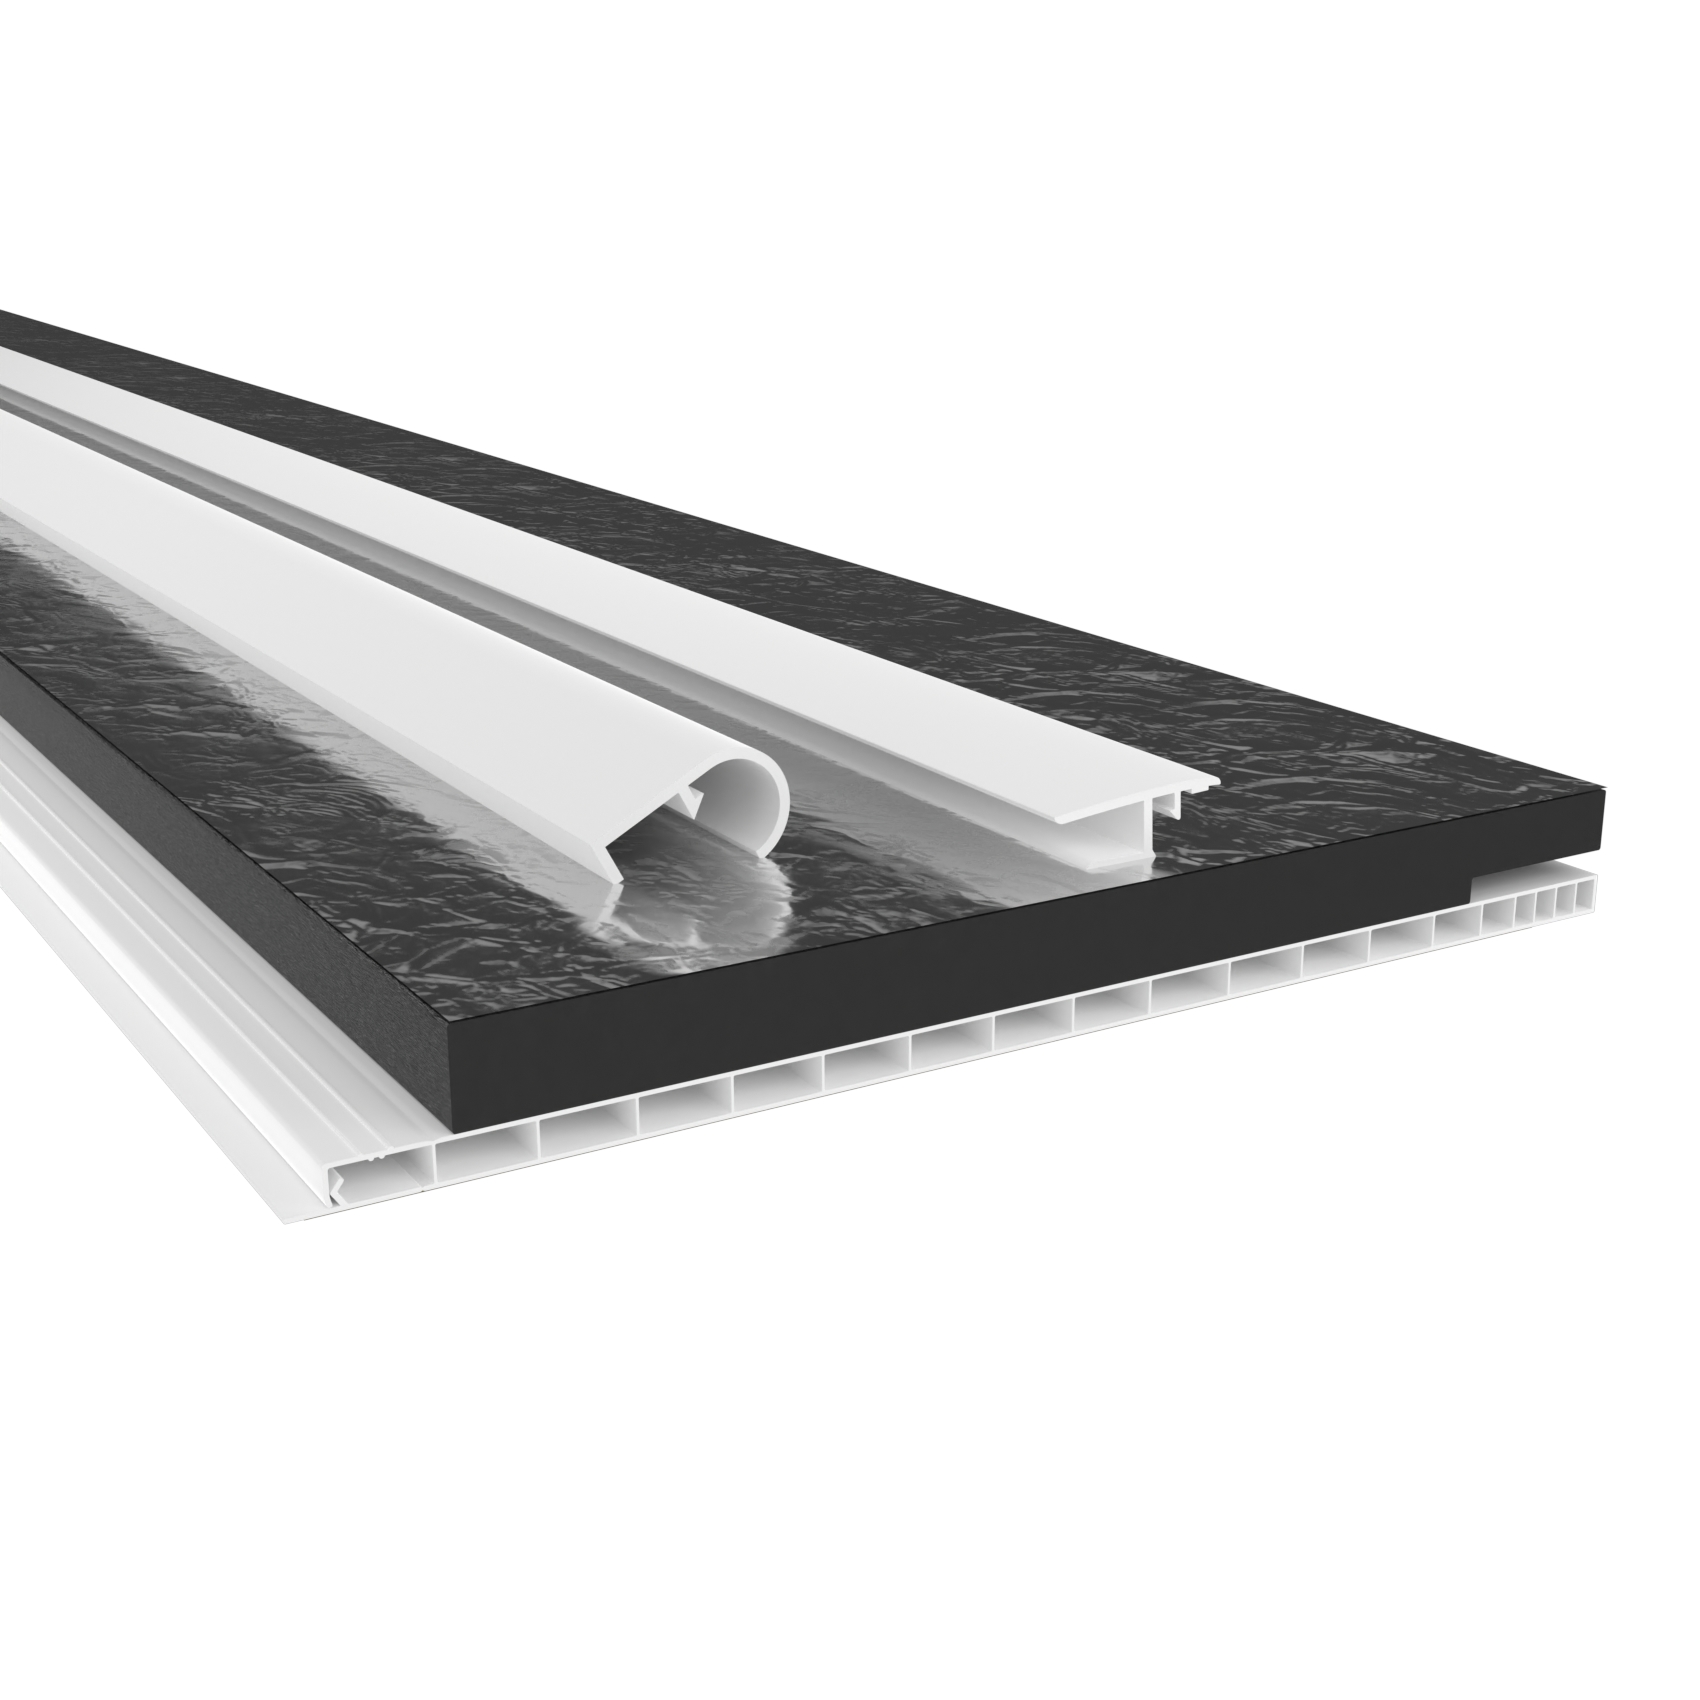 HEXIM Rollladenkastendeckel mit Dämmung, Rollladendeckel PVC Rollladen Profile Revisionsklappe Fenster